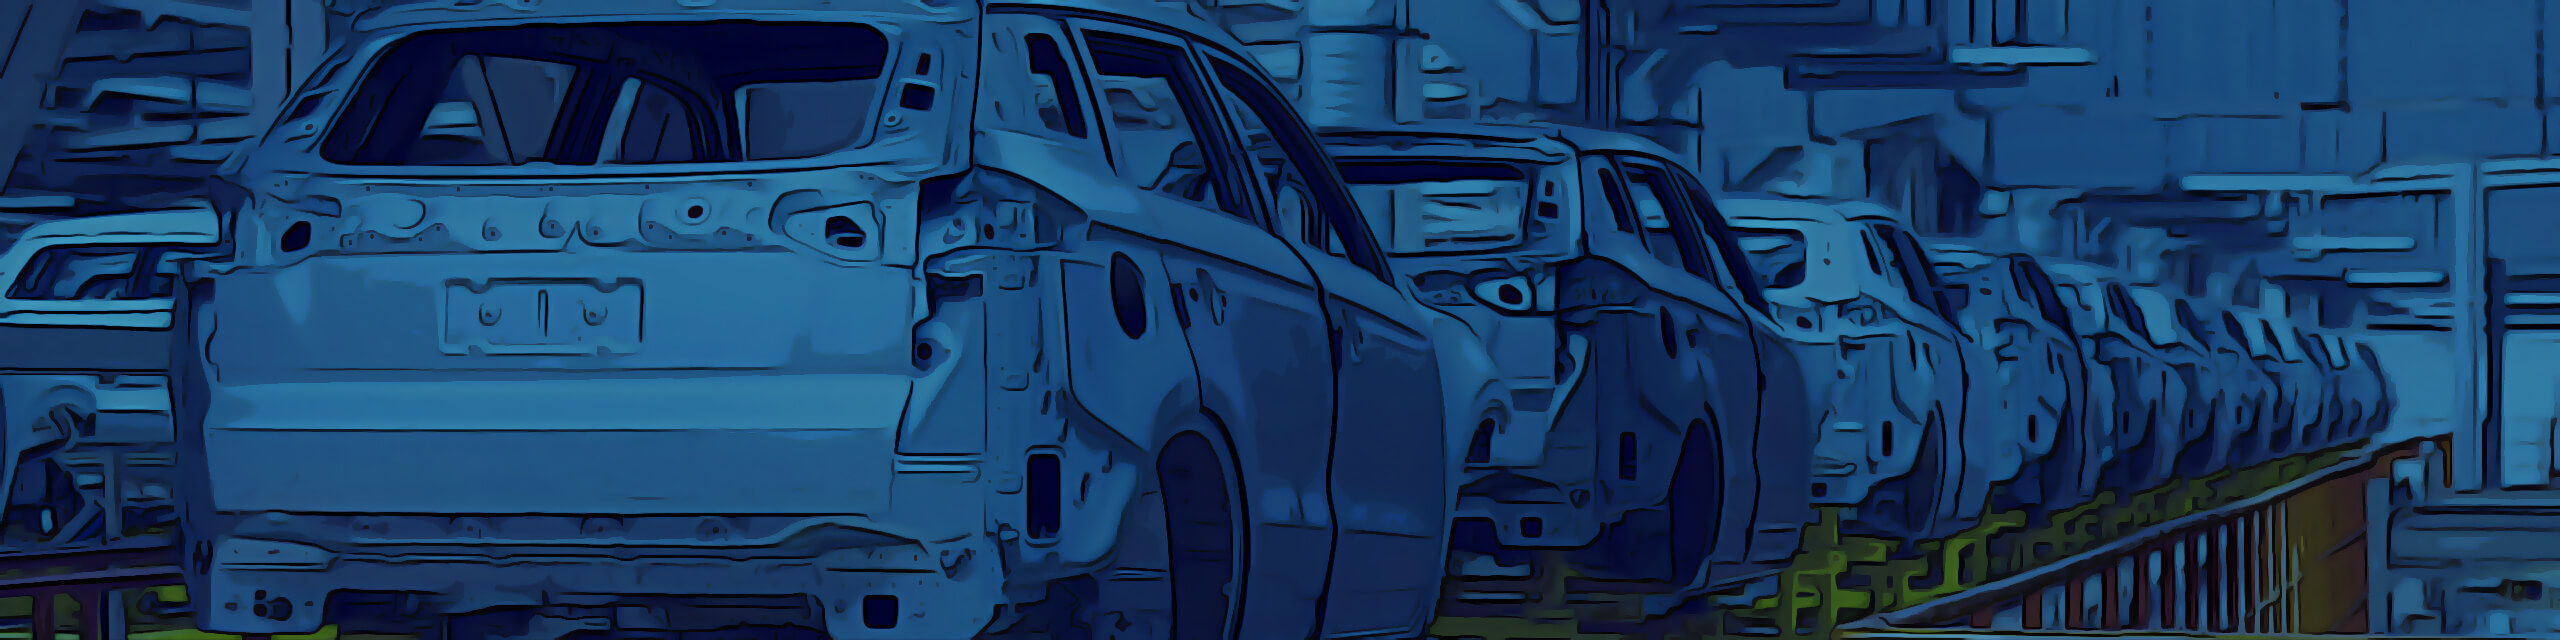 Ilustrační pozadí Automechanik